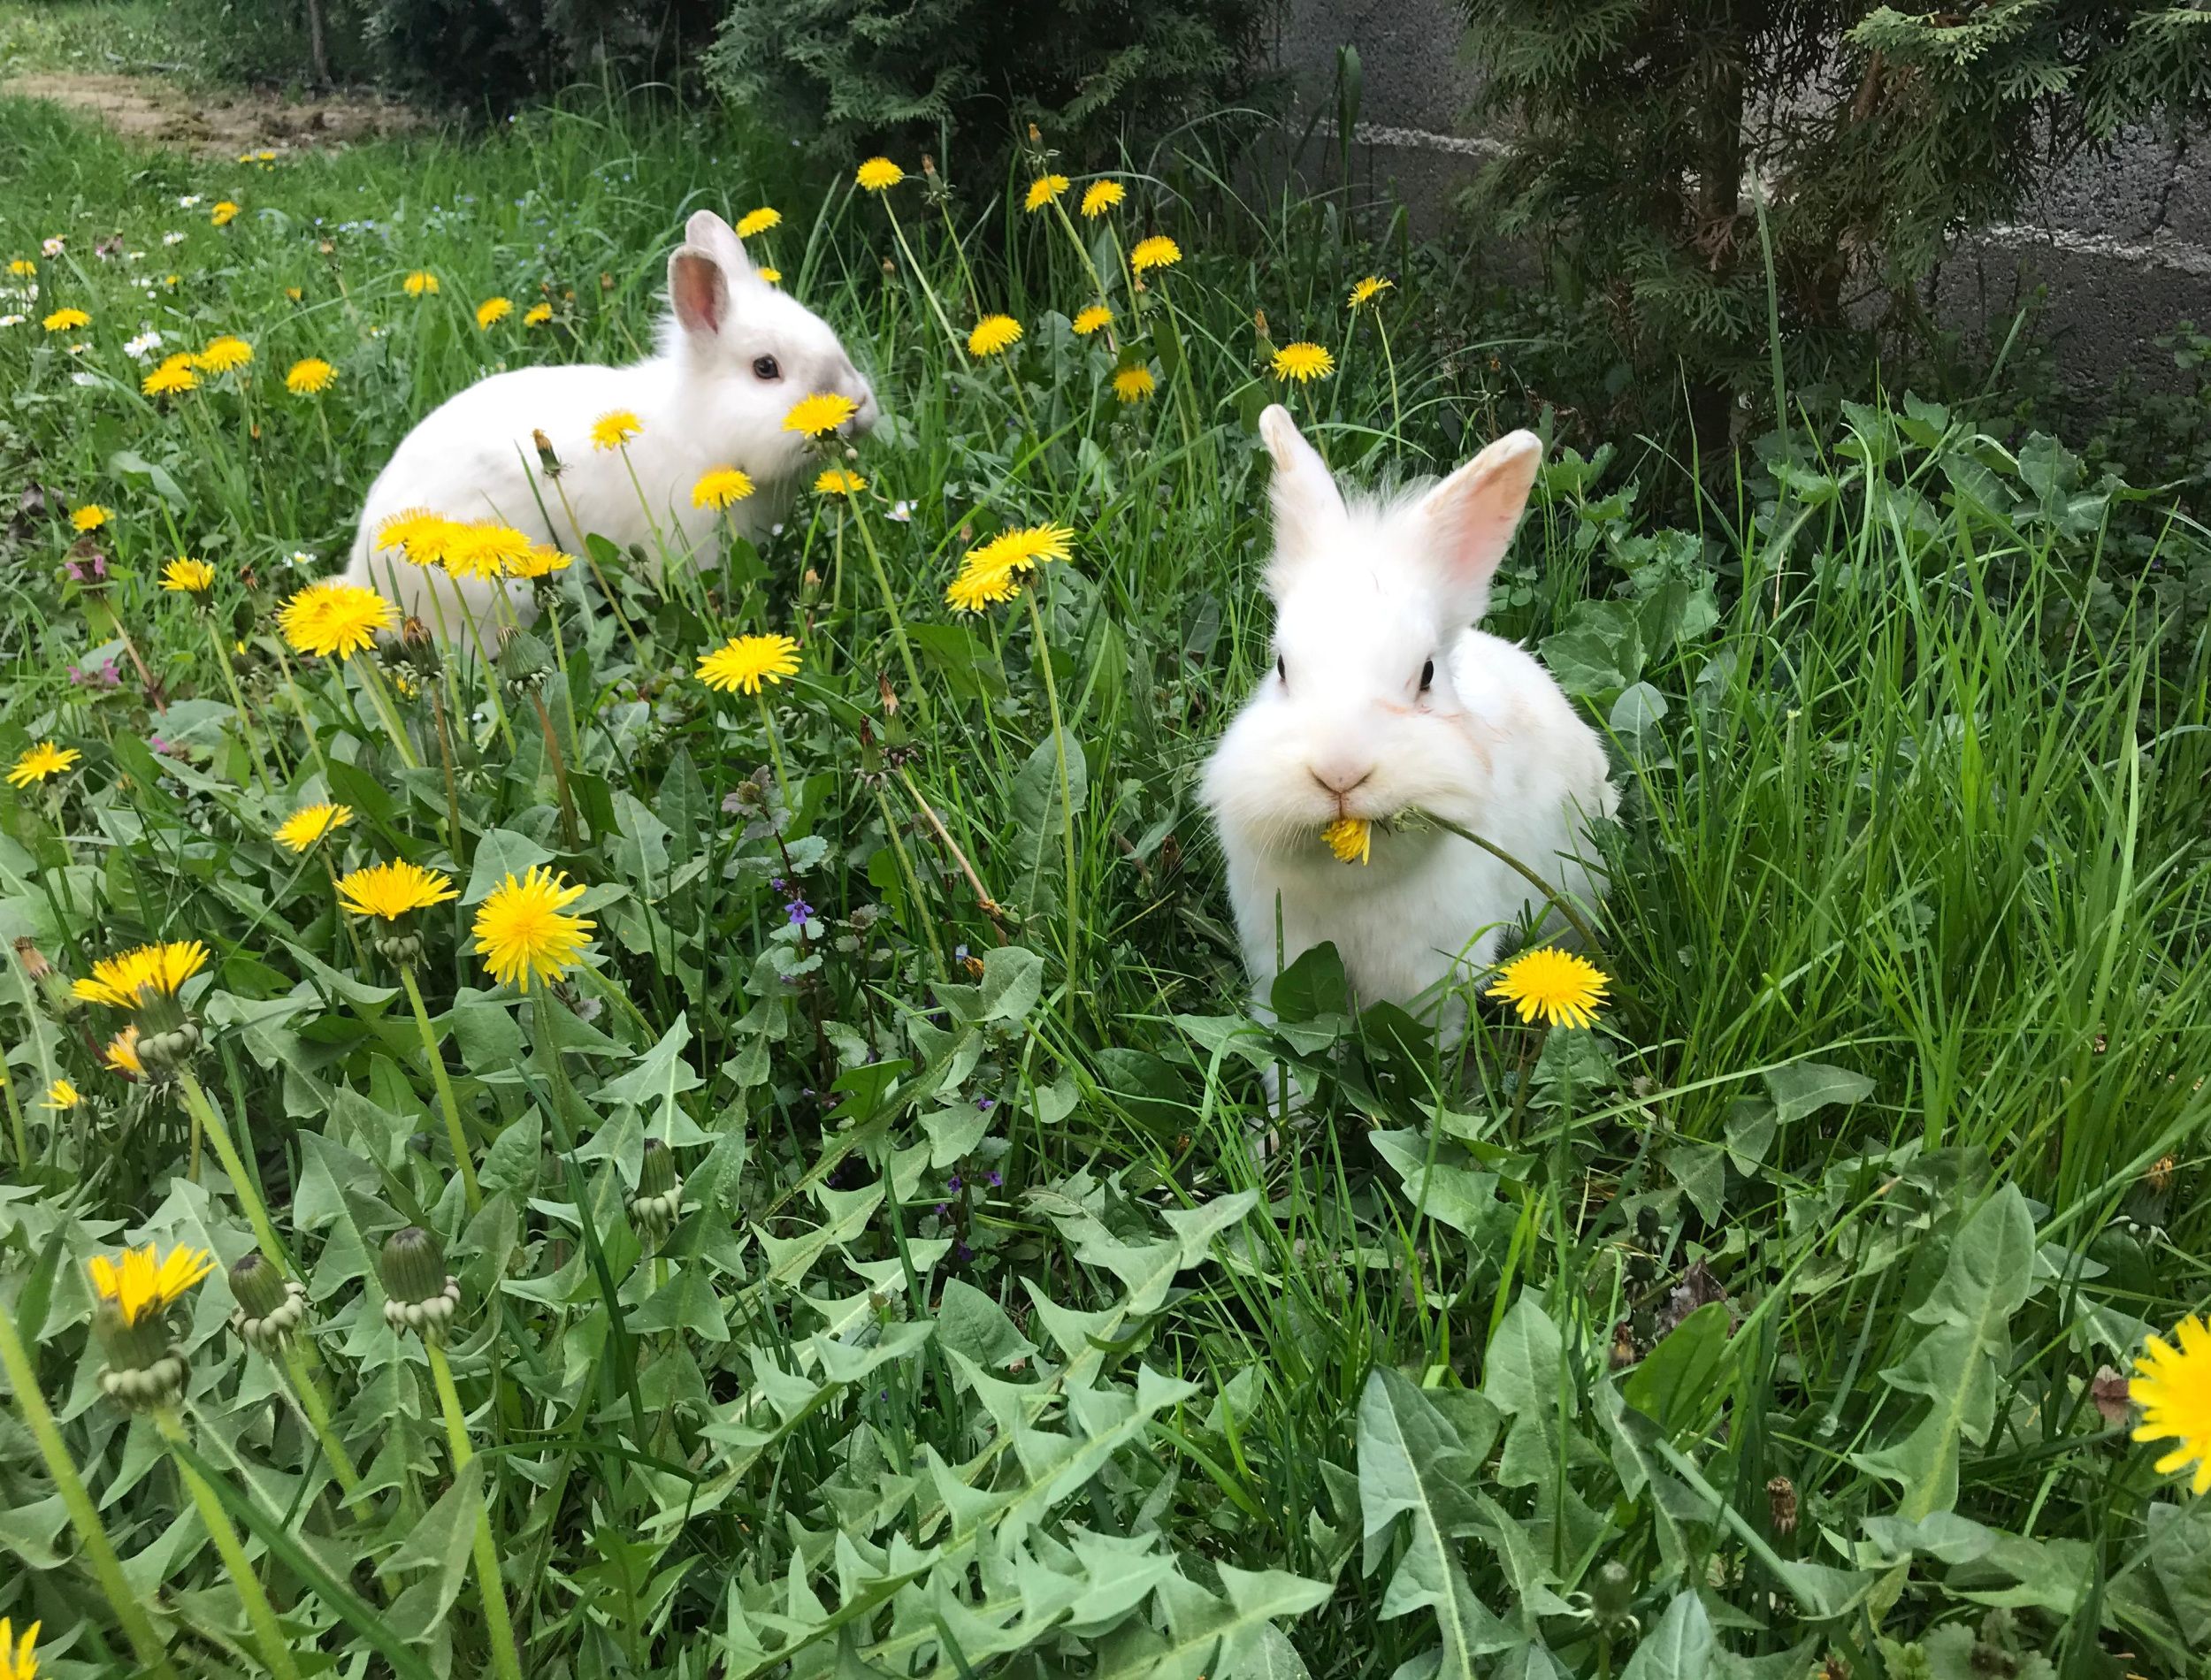 rabbits in garden